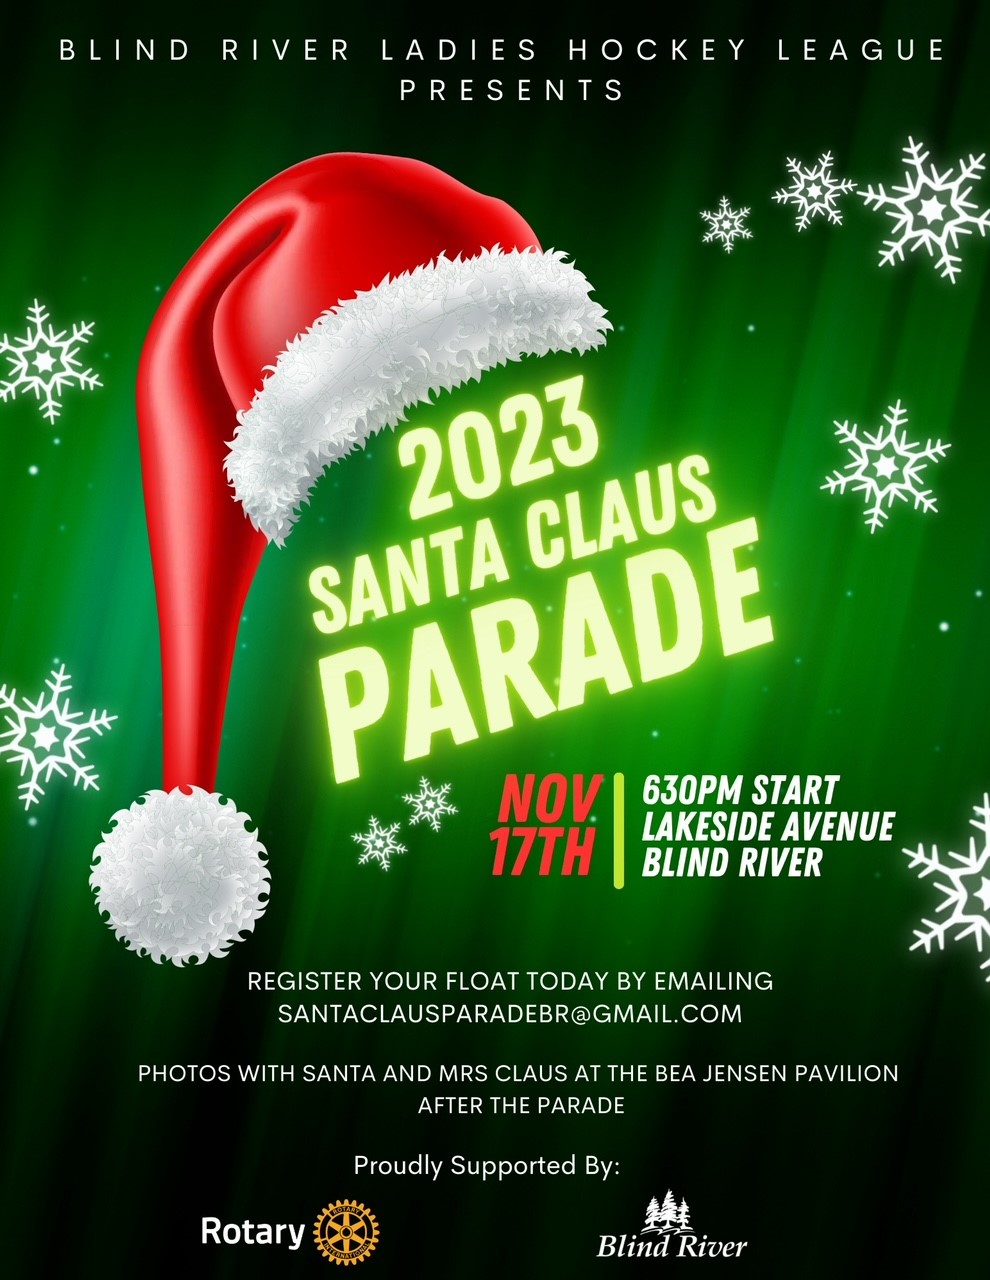 santa parade poster.jpg